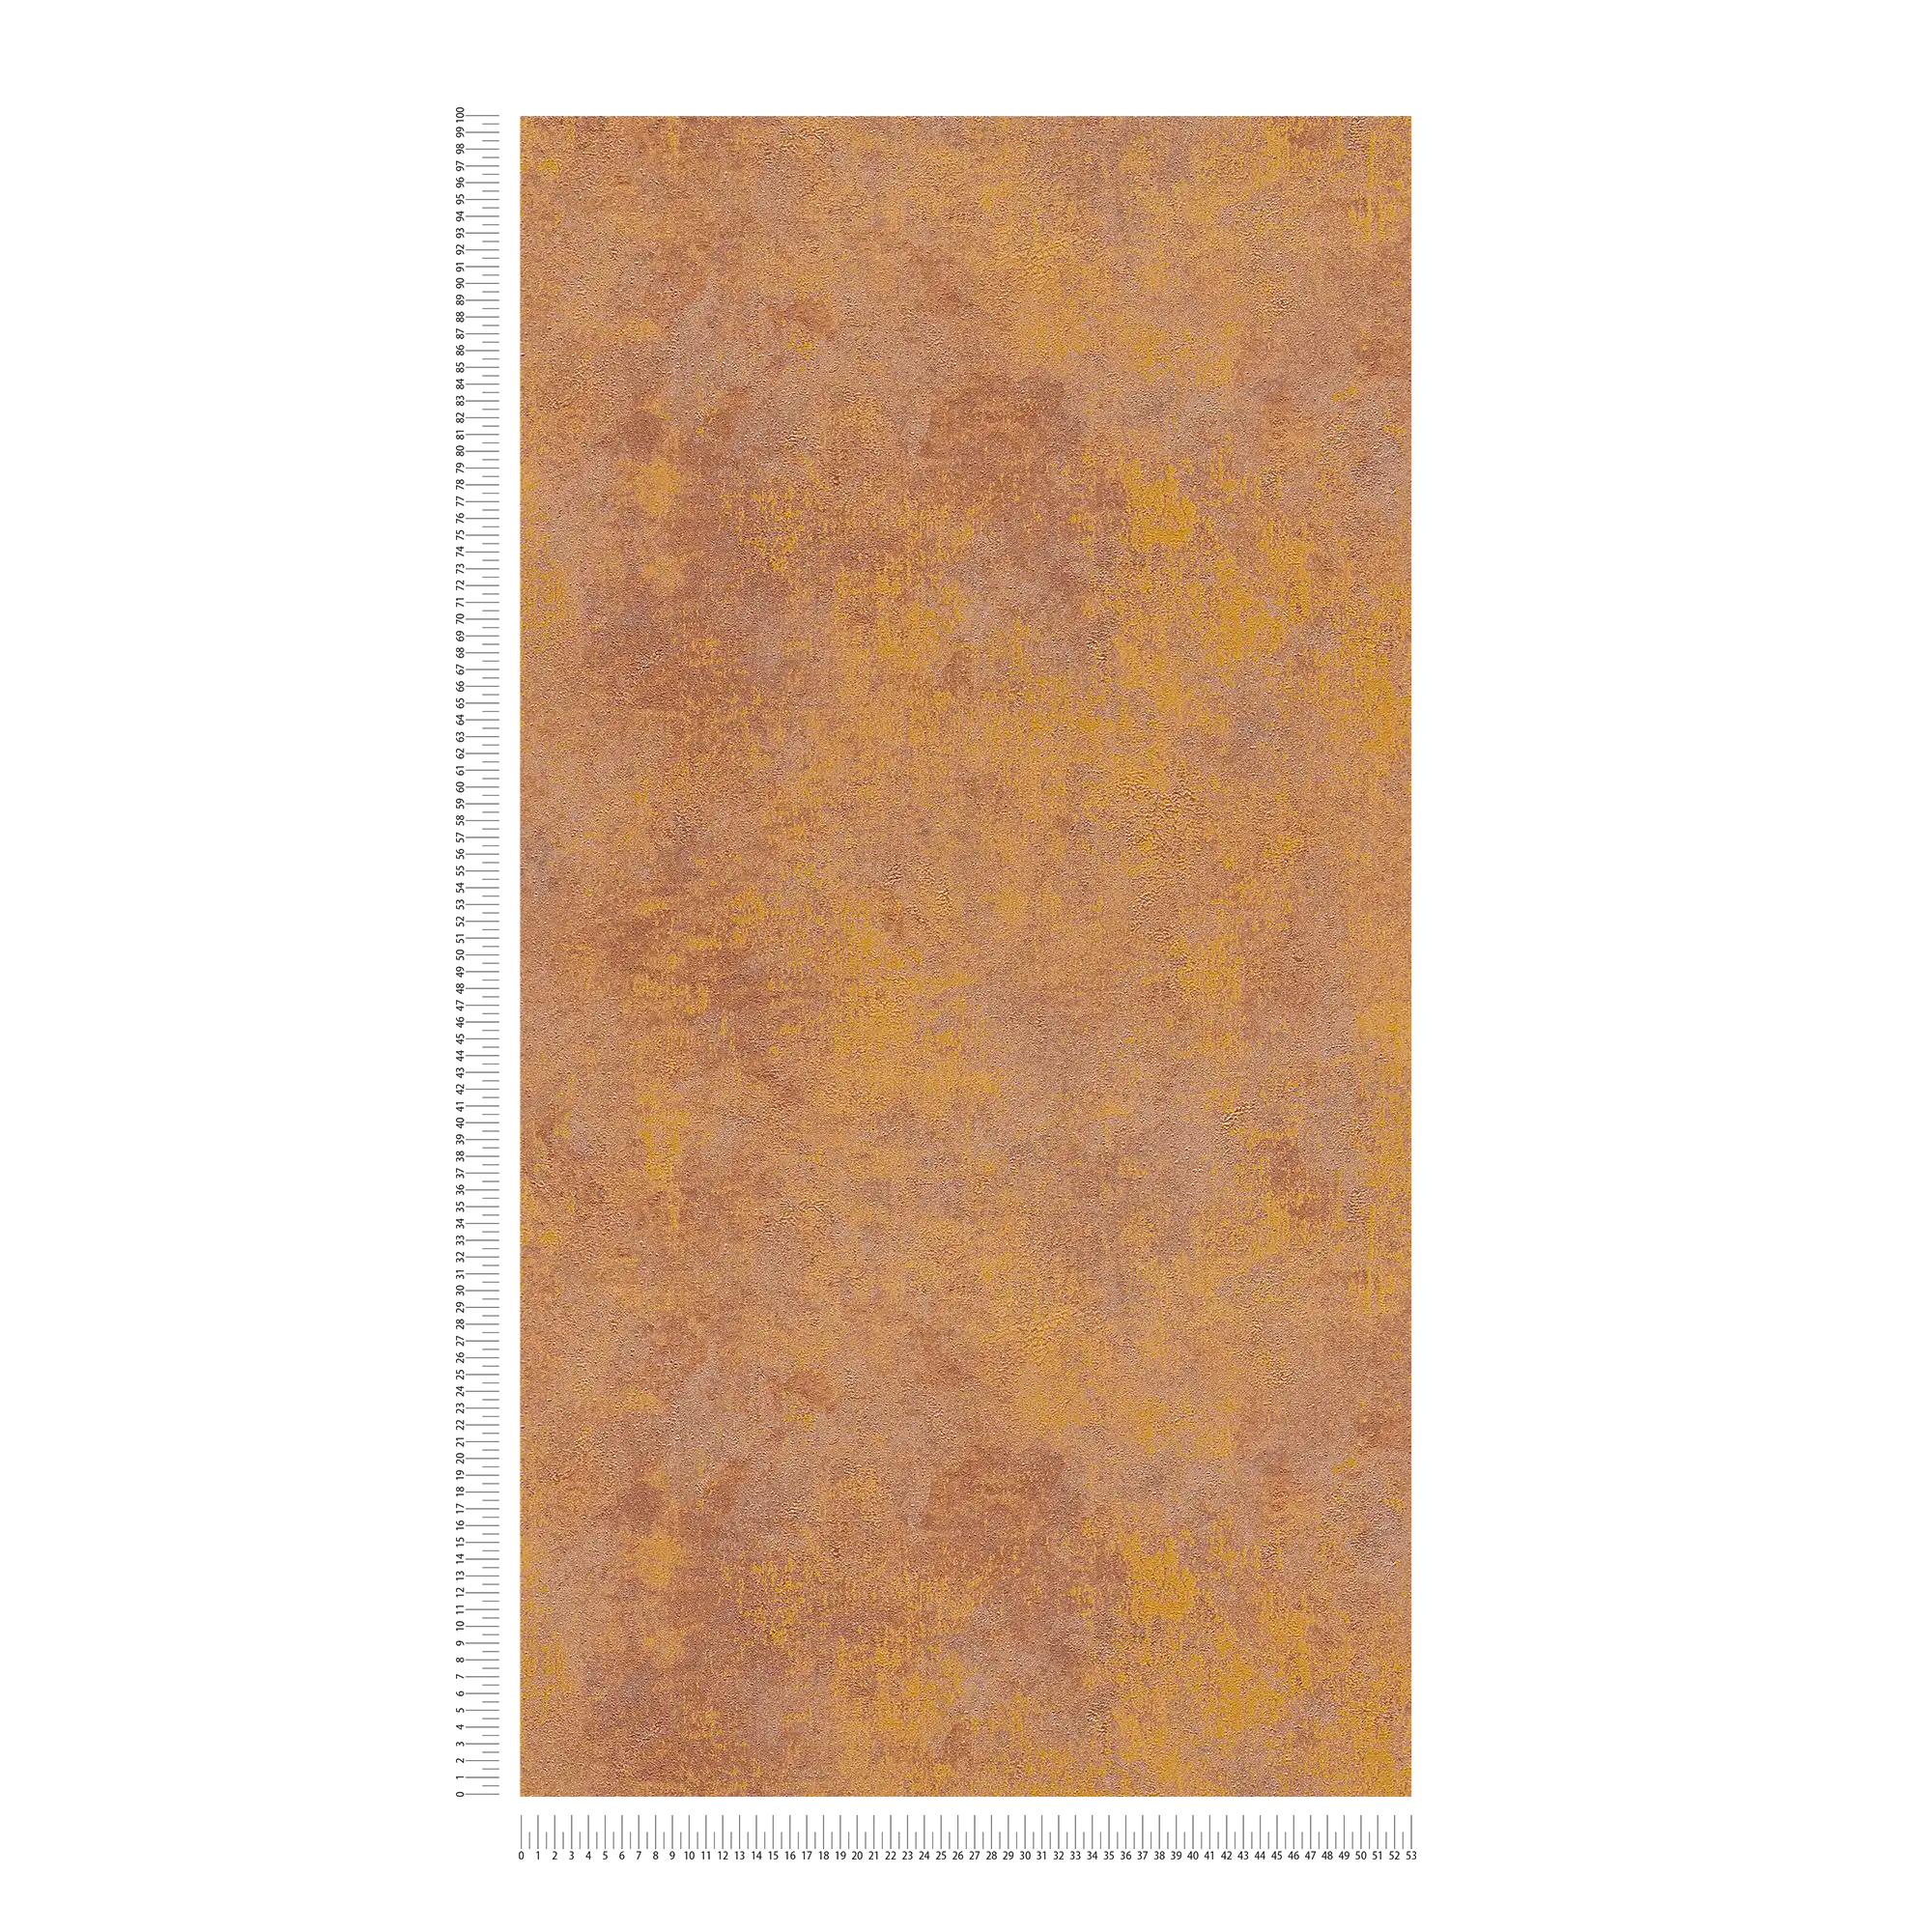             Papel pintado no tejido de aspecto oxidado con efecto brillante - naranja, cobre, marrón
        